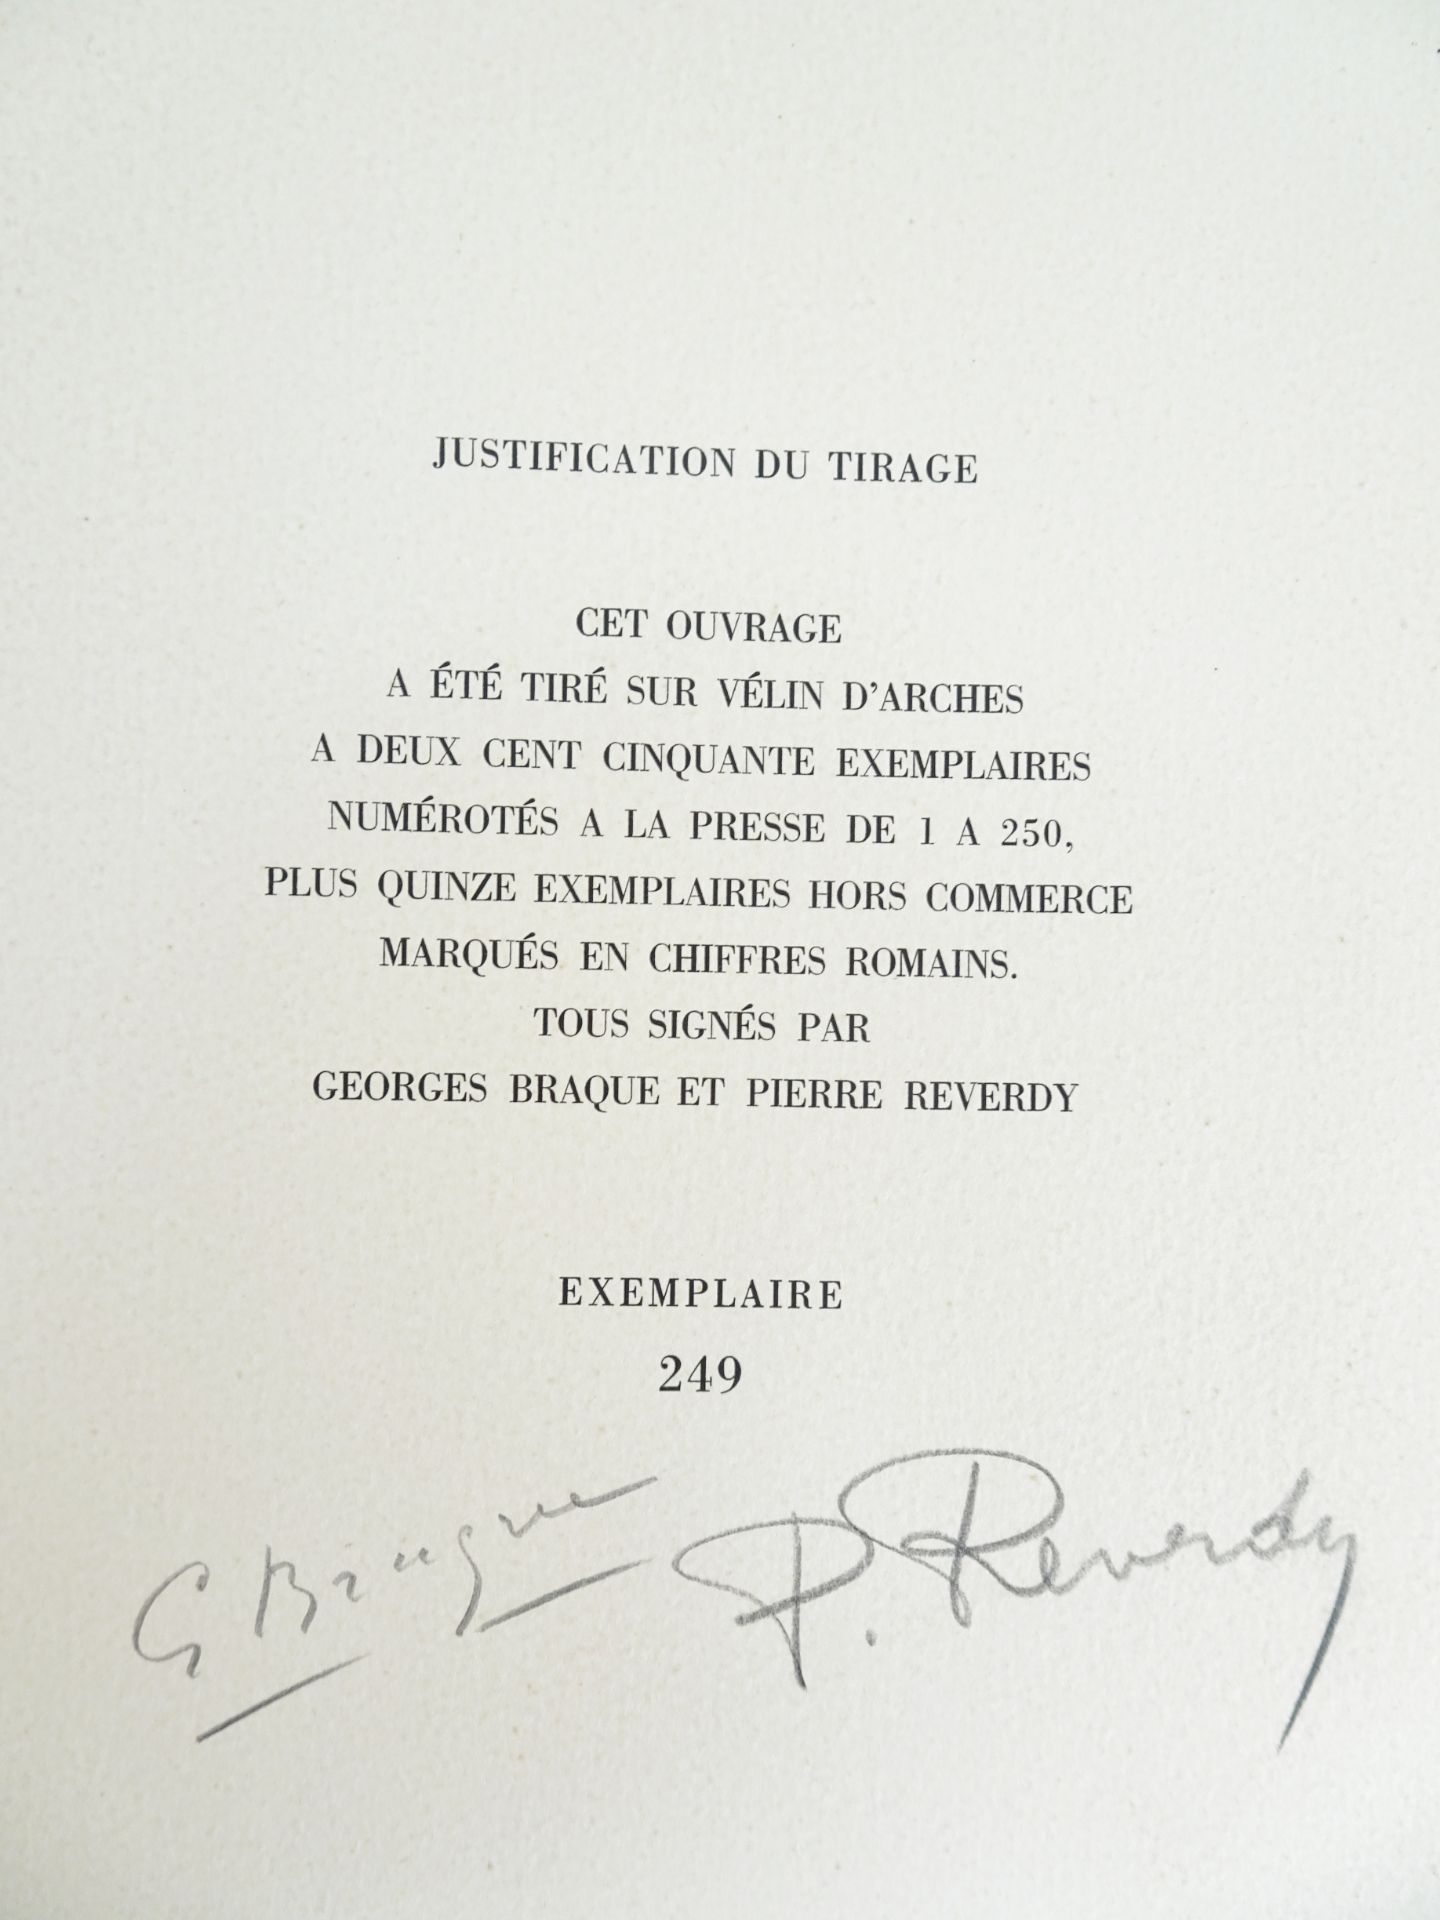 |Art| Braque George & REVERDY Pierre, "Une Aventure méthodique" - signé par l'artiste, 1950 - Image 3 of 17